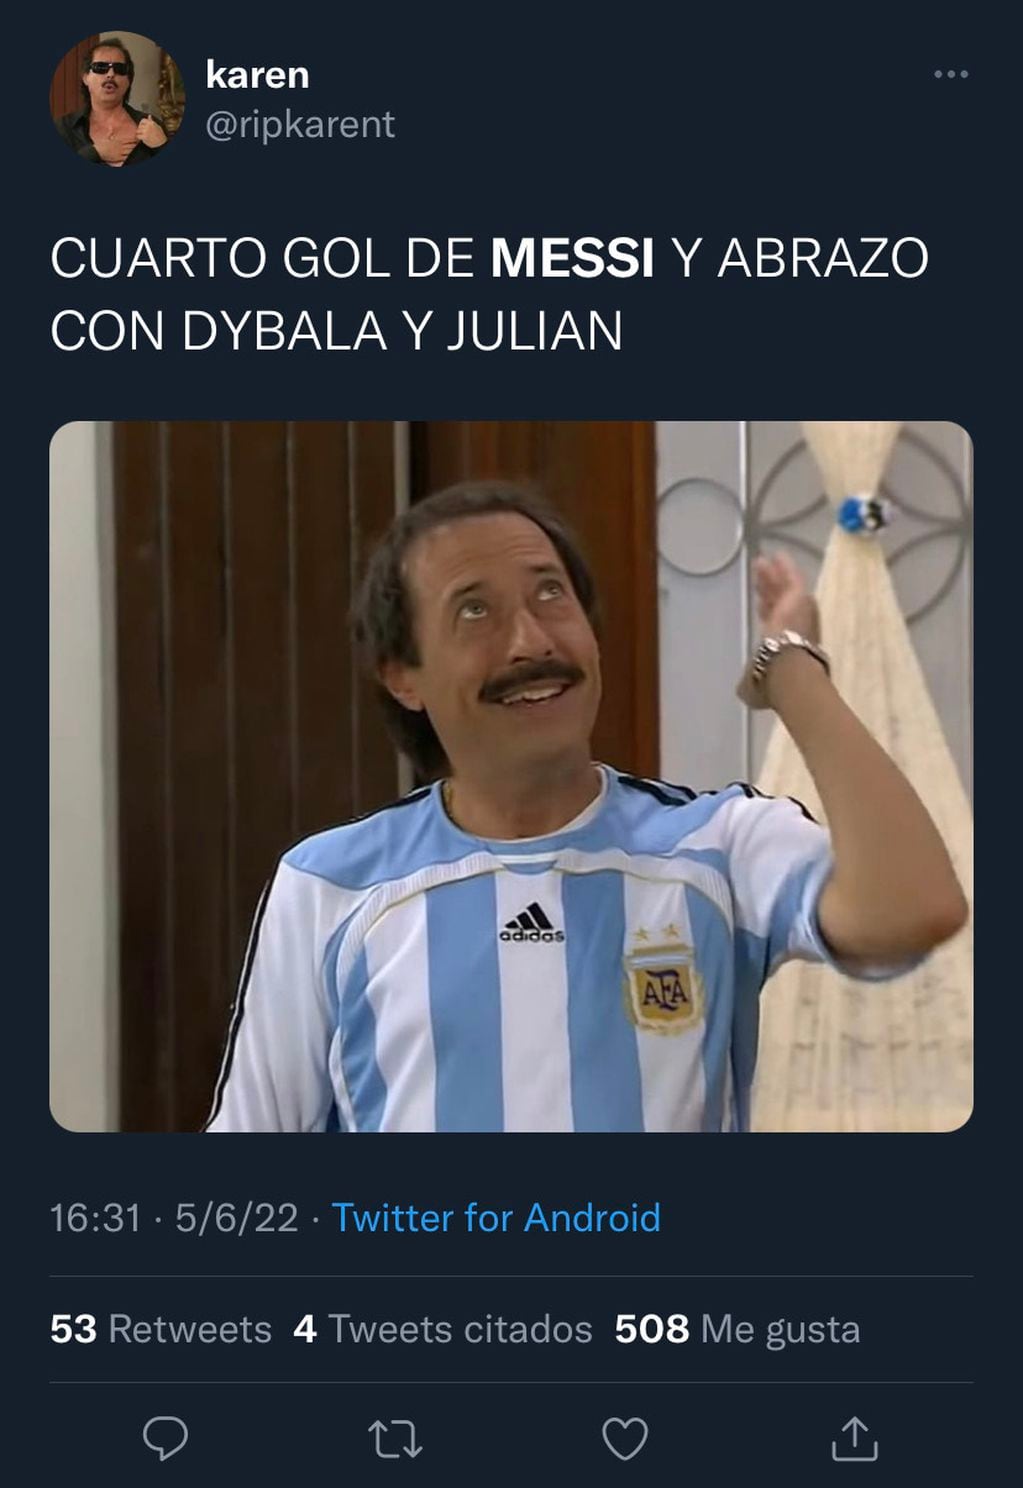 @ripkarent subió una imagen de Guillermo Francella con la camiseta Argentina tras el abrazo de Lionel Messi con Paulo Dybala y Julián Álvarez.